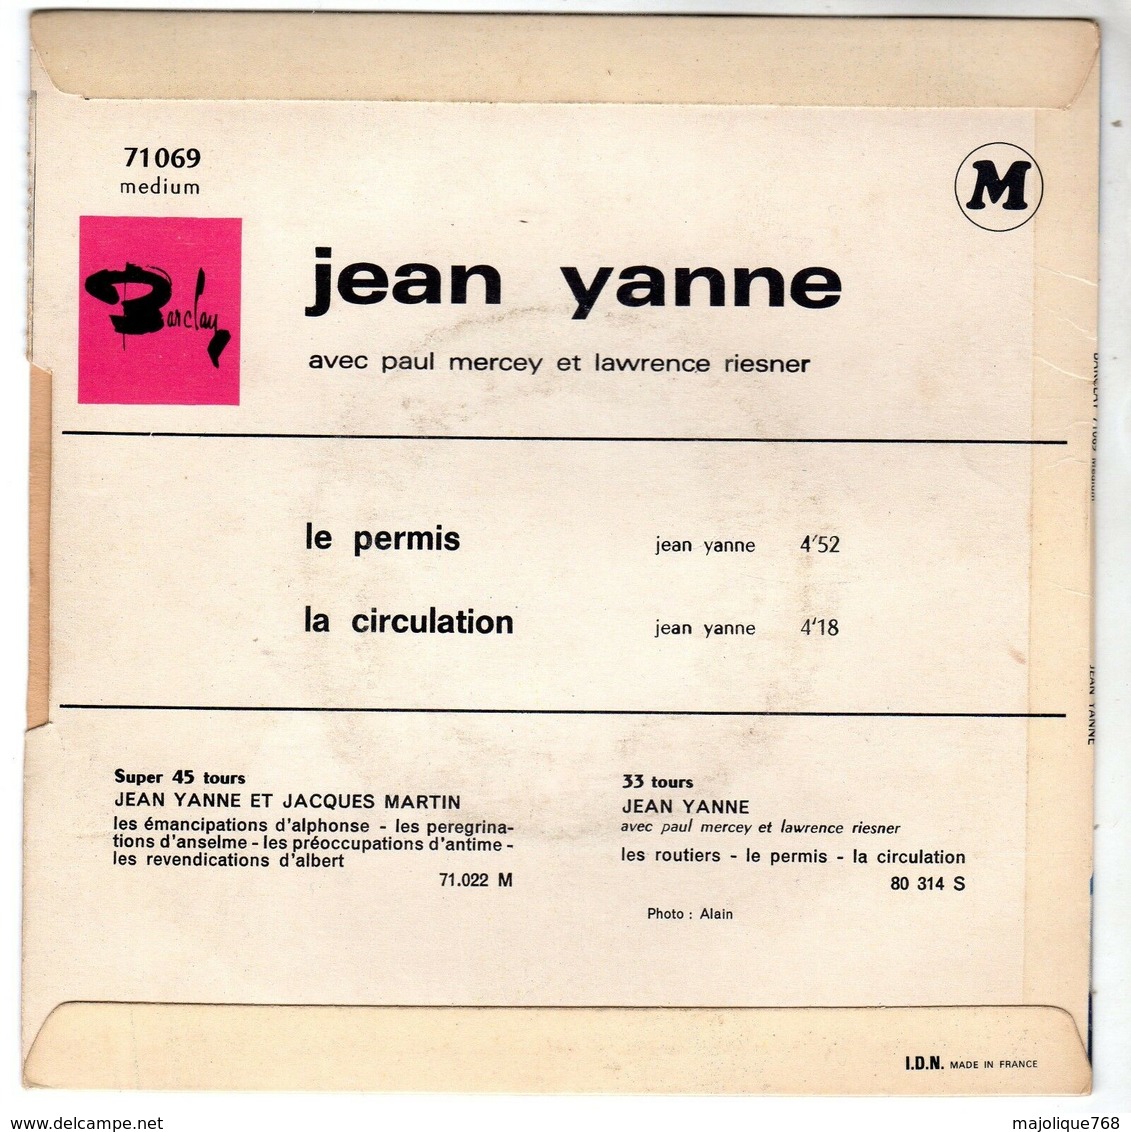 Disque De Jean Yanne - Le Permis - Barclay 71069 M - 1967 - - Comiques, Cabaret